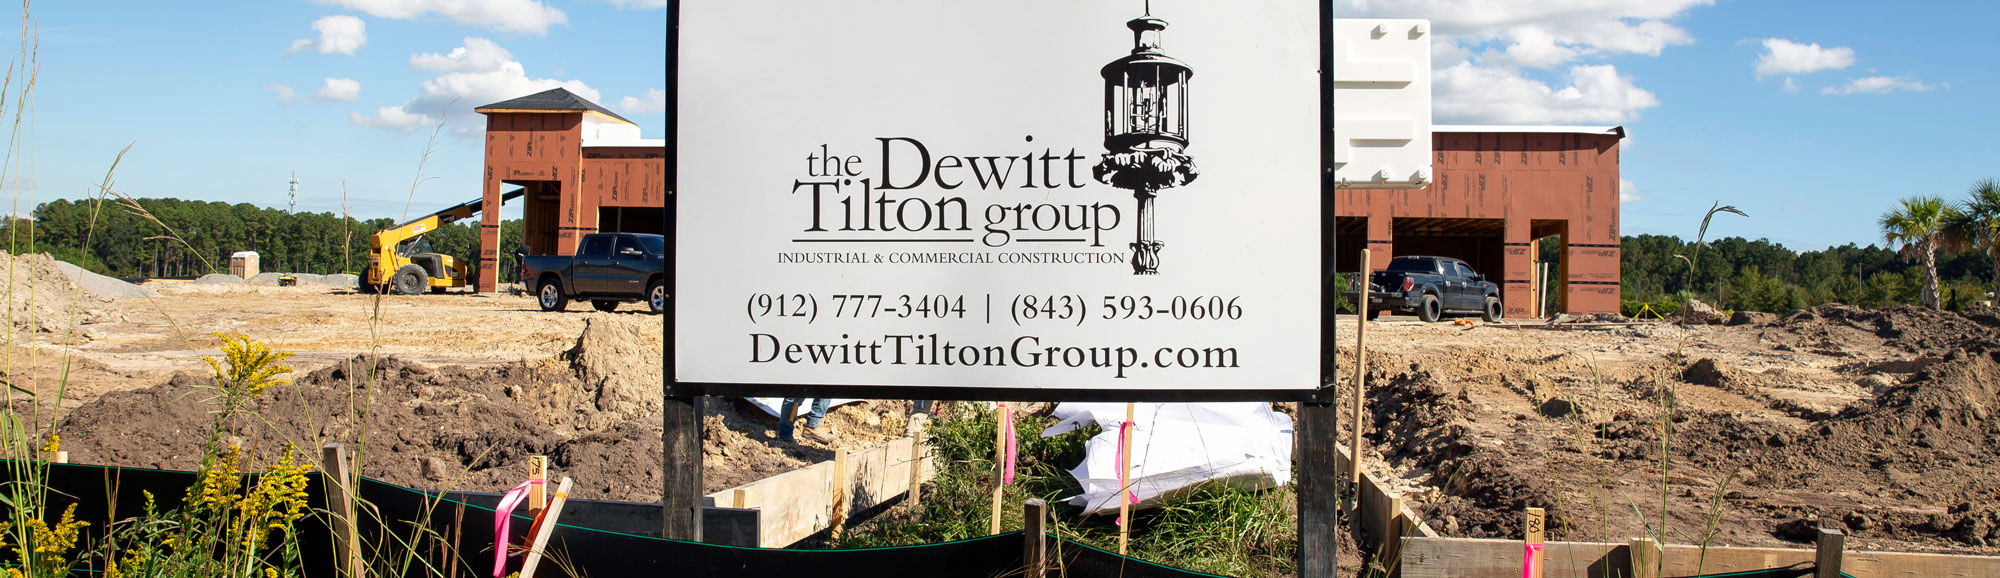 The Dewitt Tilton Group